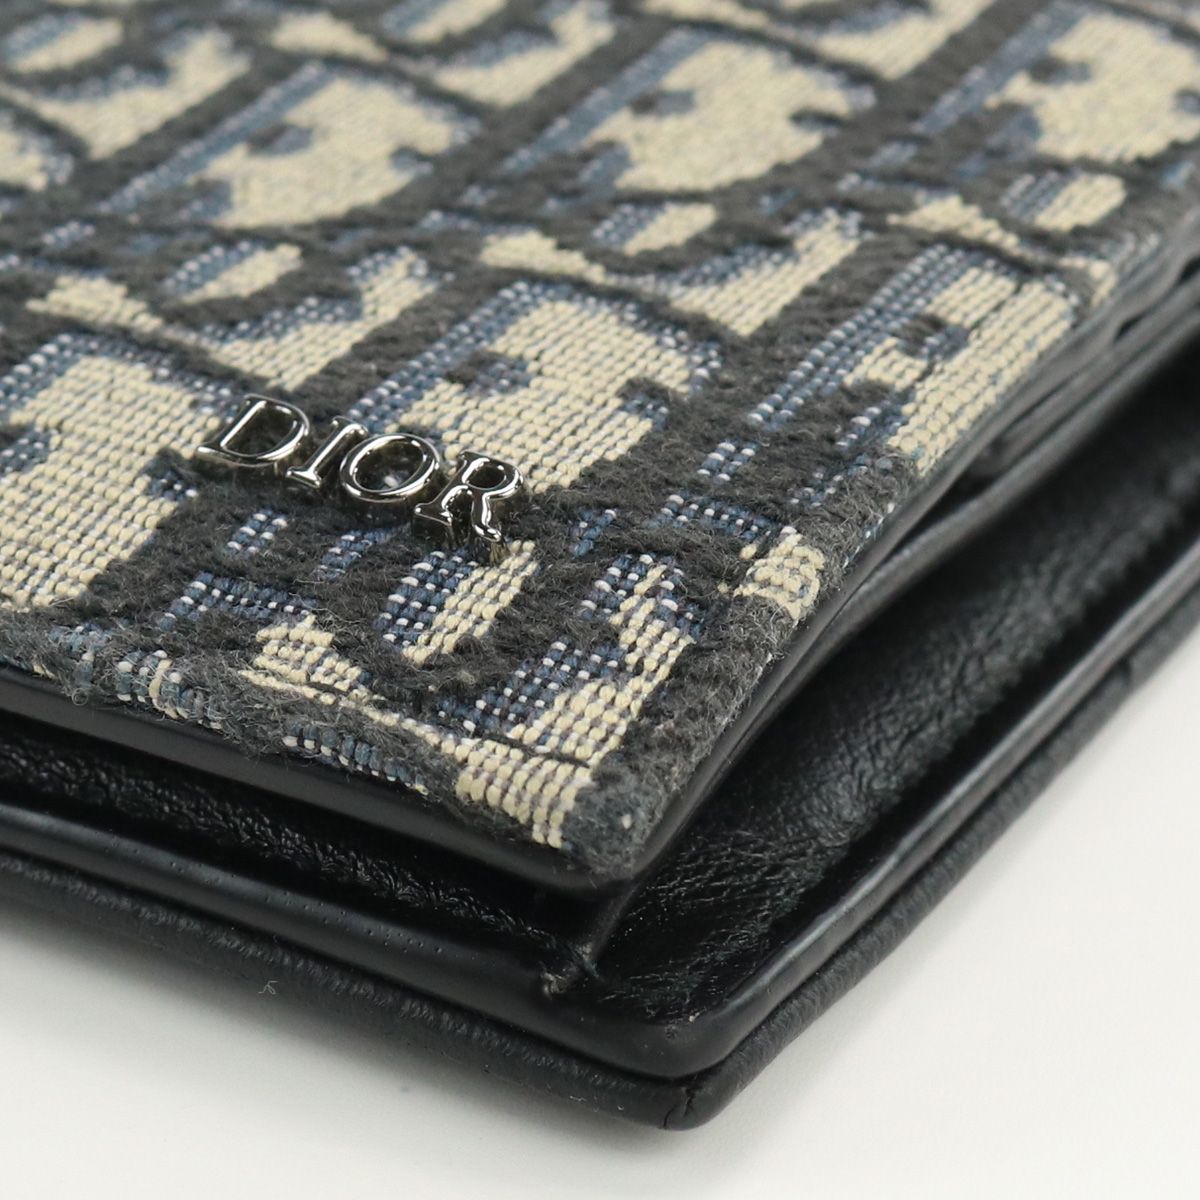 Christian Dior クリスチャンディオール コインケース付きウォレット サドル 2ADBC306 YKS H05E 二折財布 ジャガード メンズ